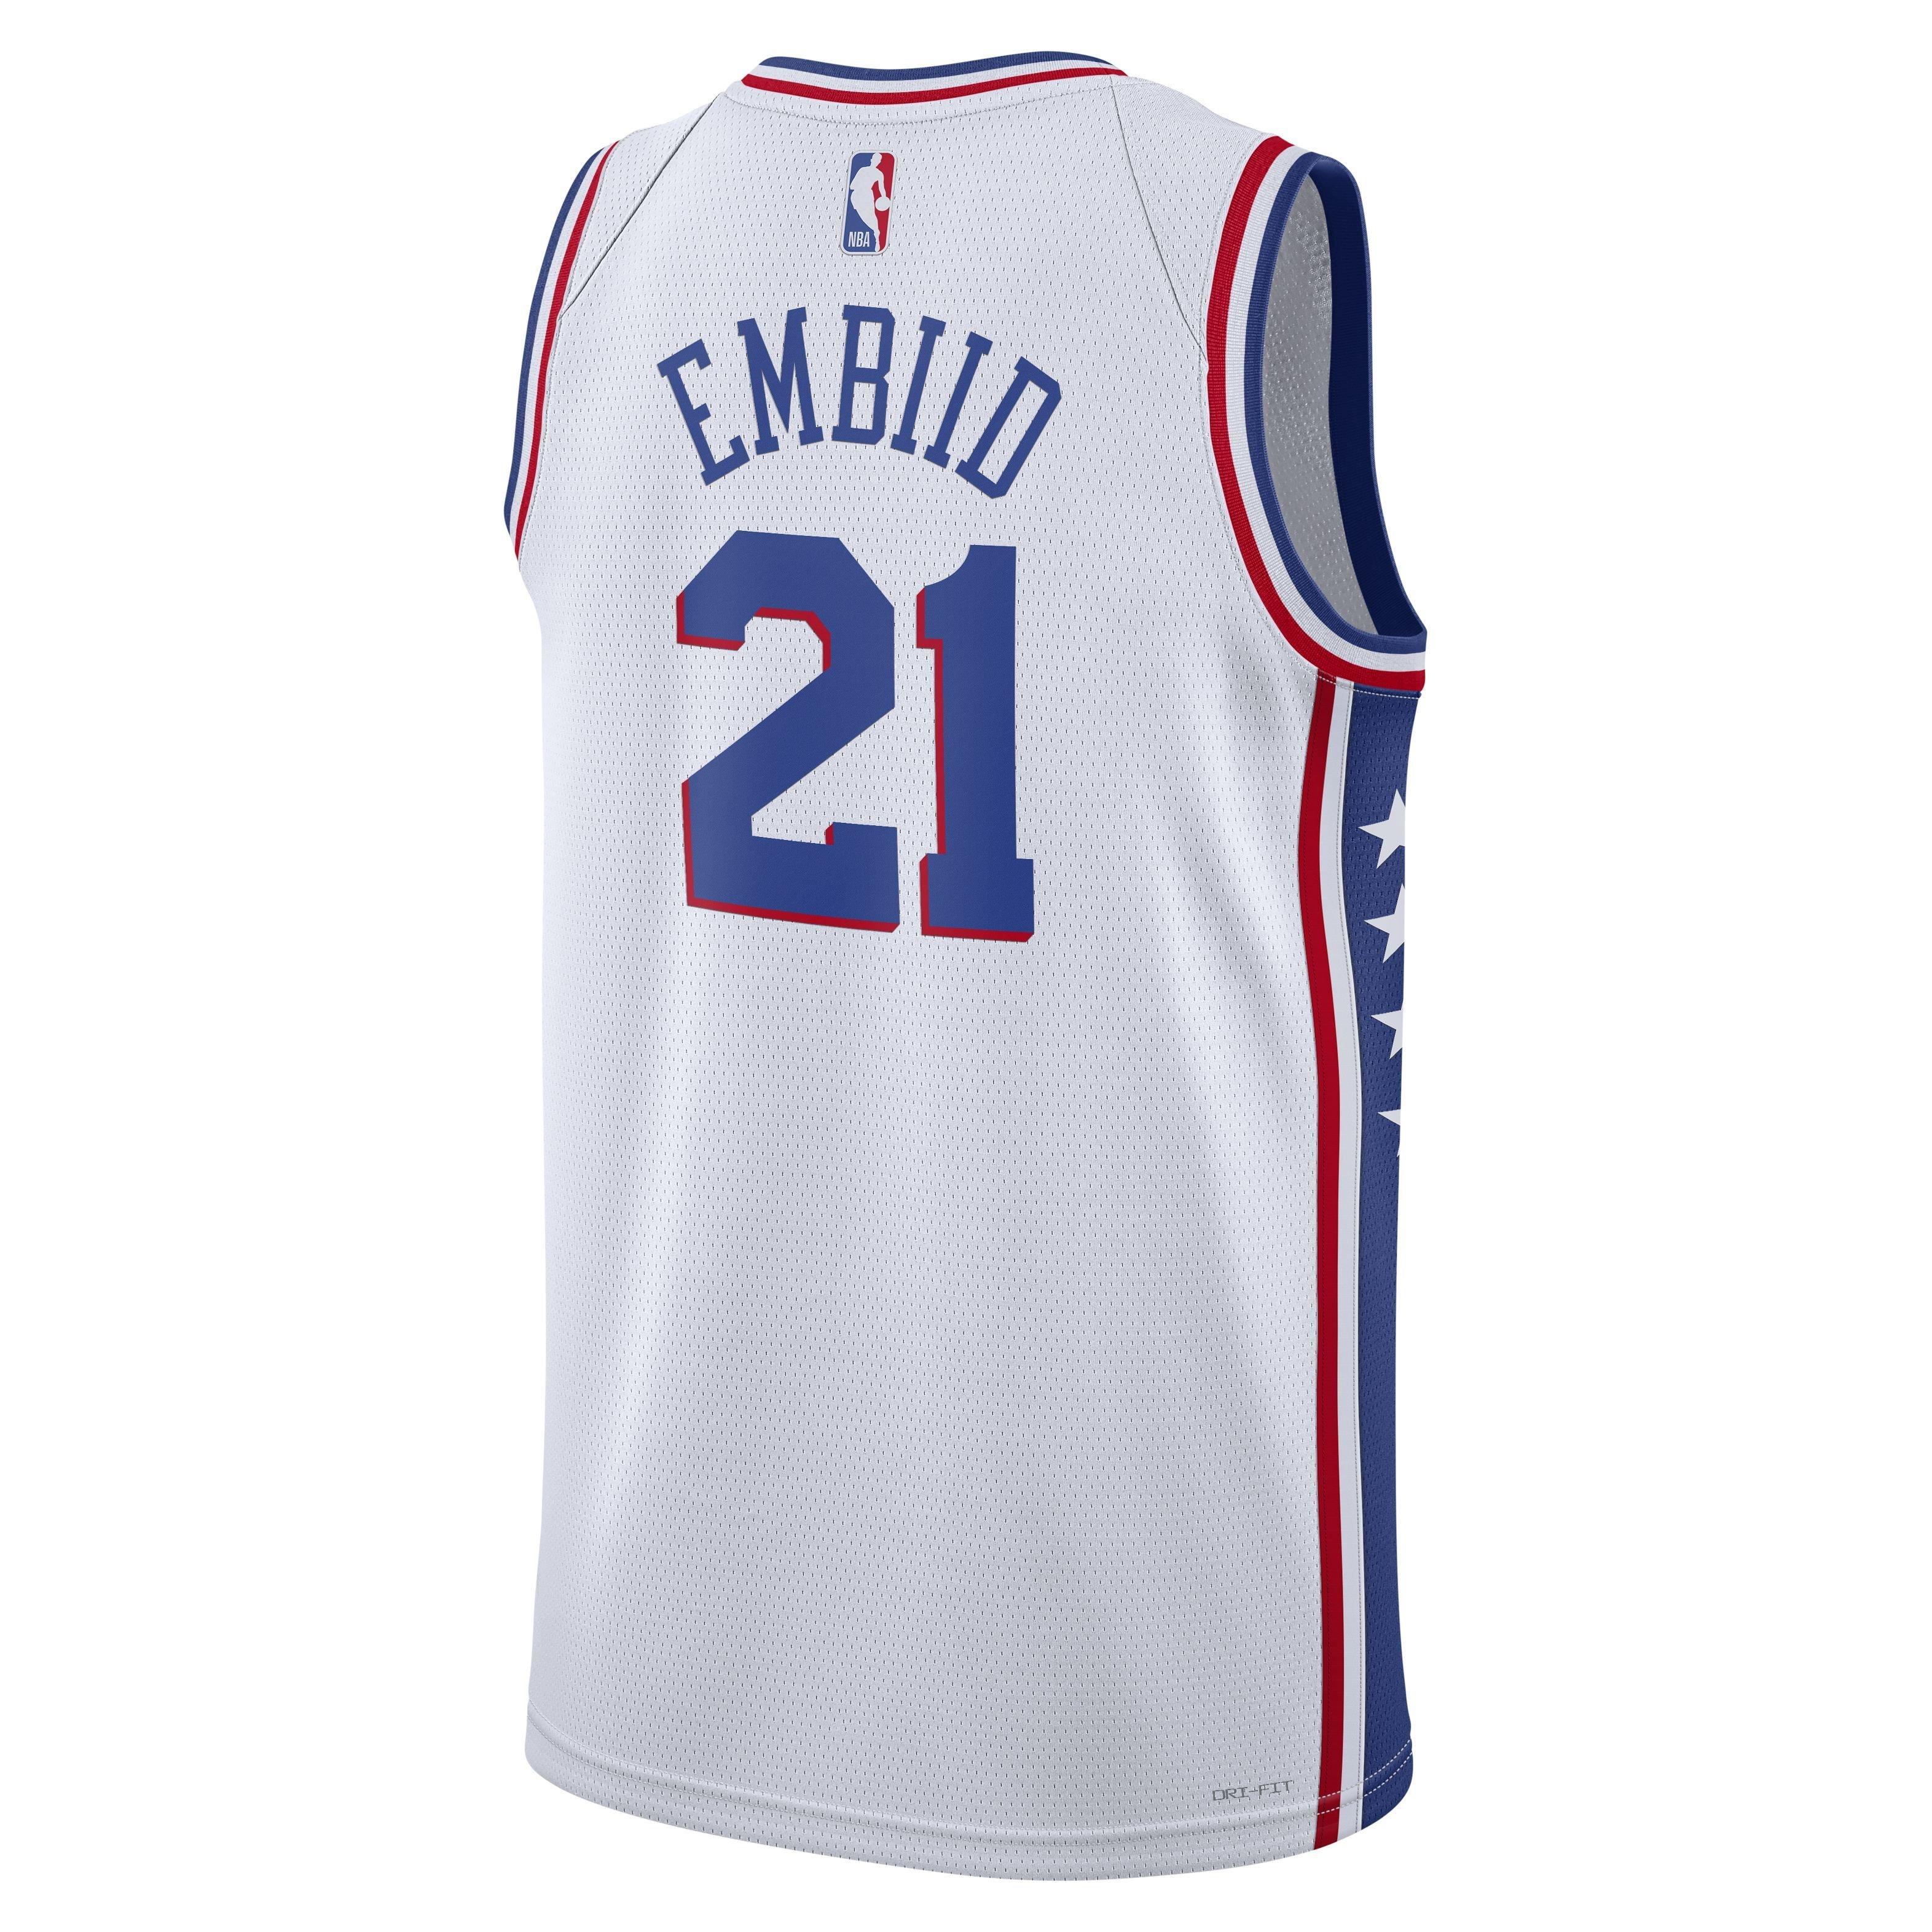 Nike Men's 2022-23 City Edition Philadelphia 76ers Joel Embiid #21 White  Dri-FIT Swingman Jersey